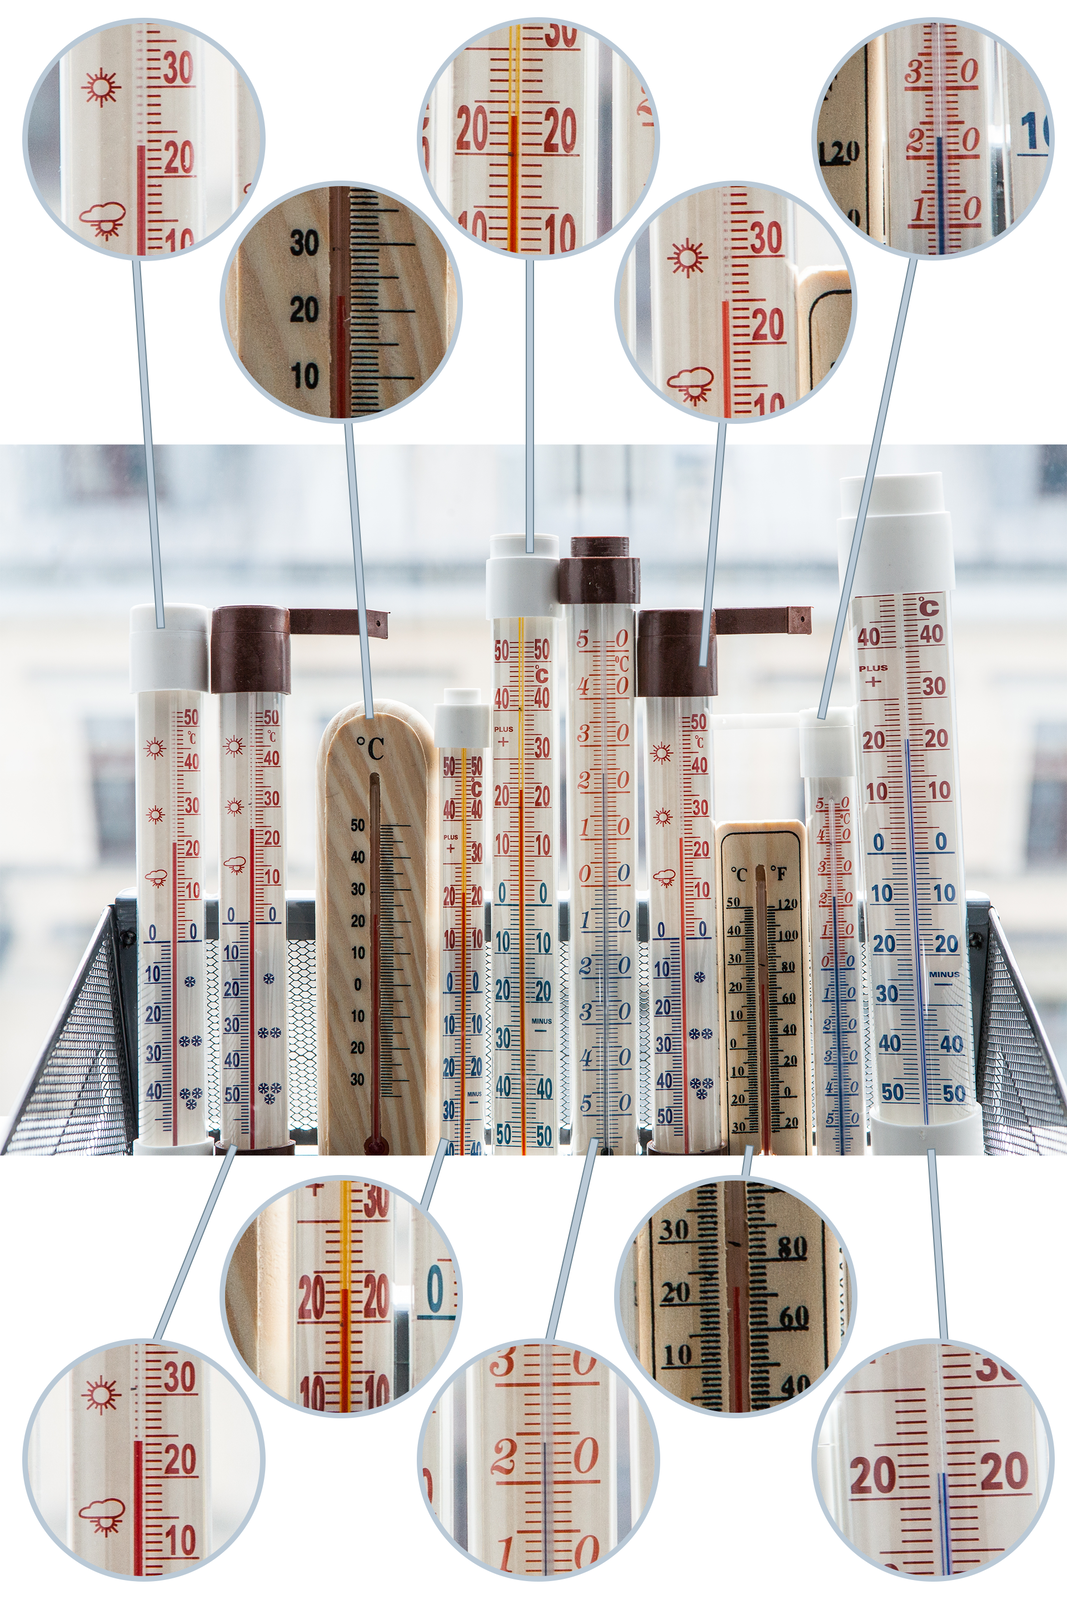 Fotografia przedstawia kosz zawierający termometry służace do pomiaru temperatury w pomieszczeniu lub na zewnątrz. Każdy z nich wskazuje nieco inny wynik pomiaru.